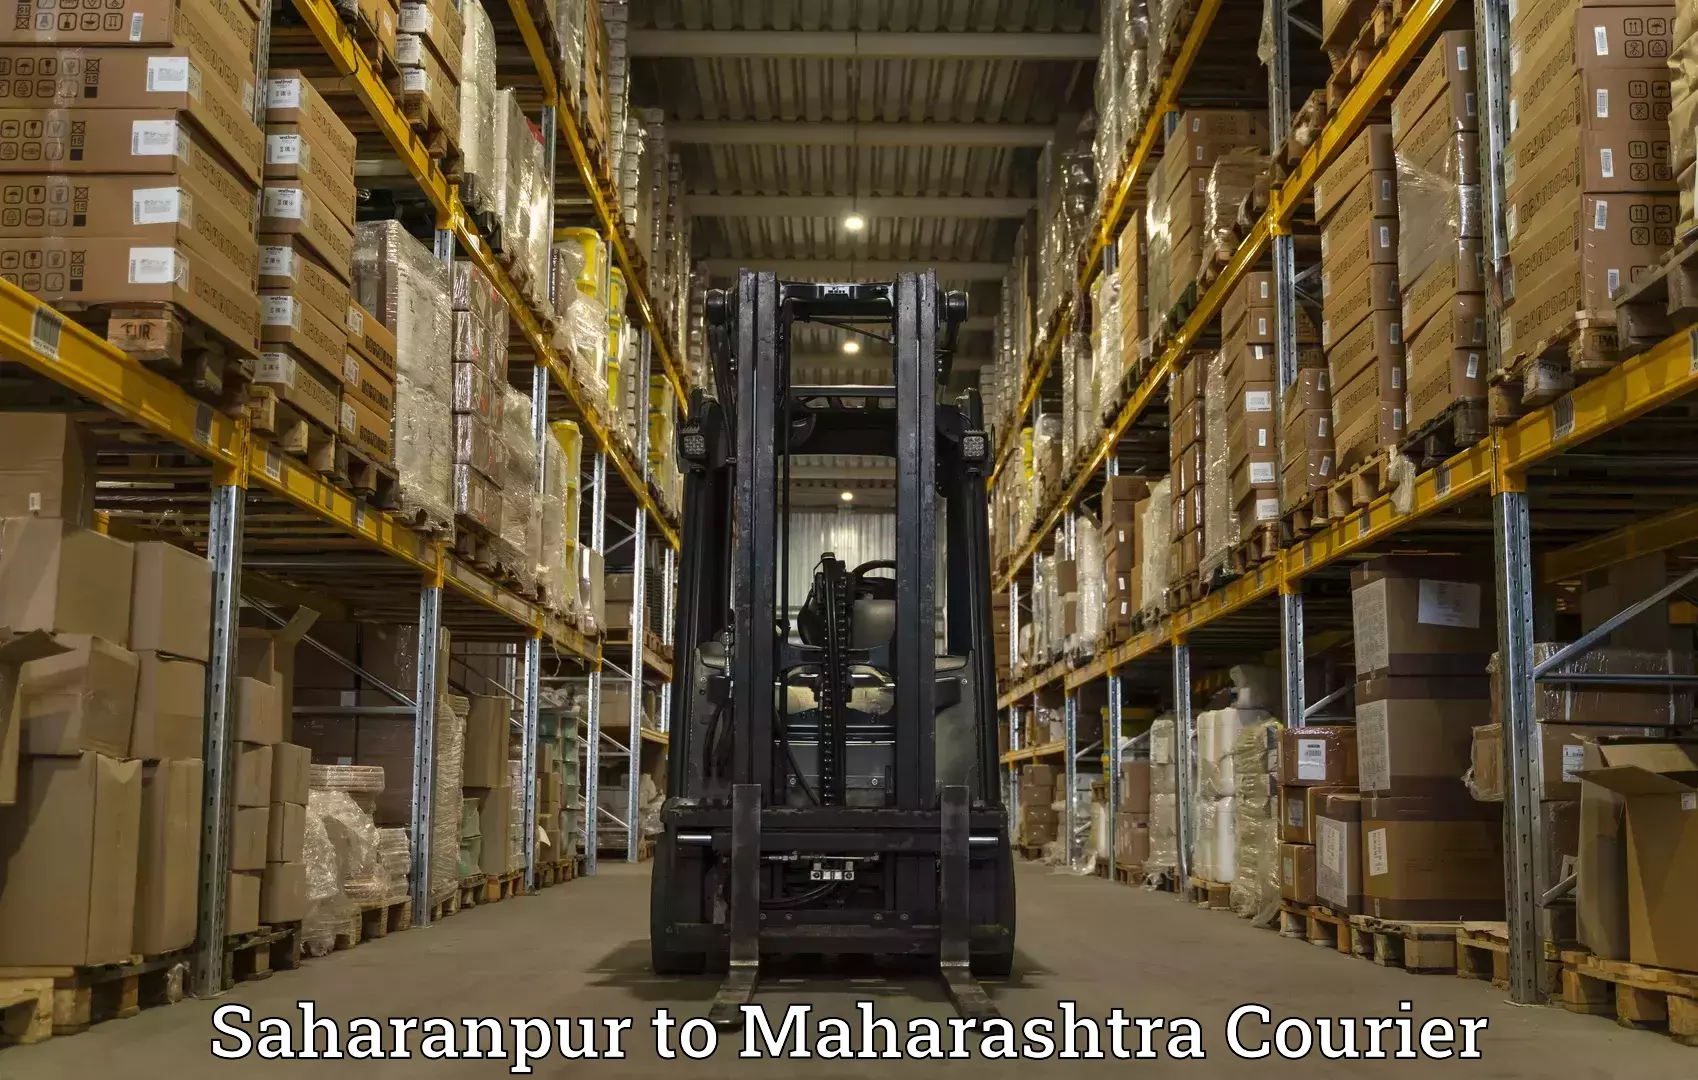 Global shipping networks Saharanpur to Dr Babasaheb Ambedkar Marathwada University Aurangabad